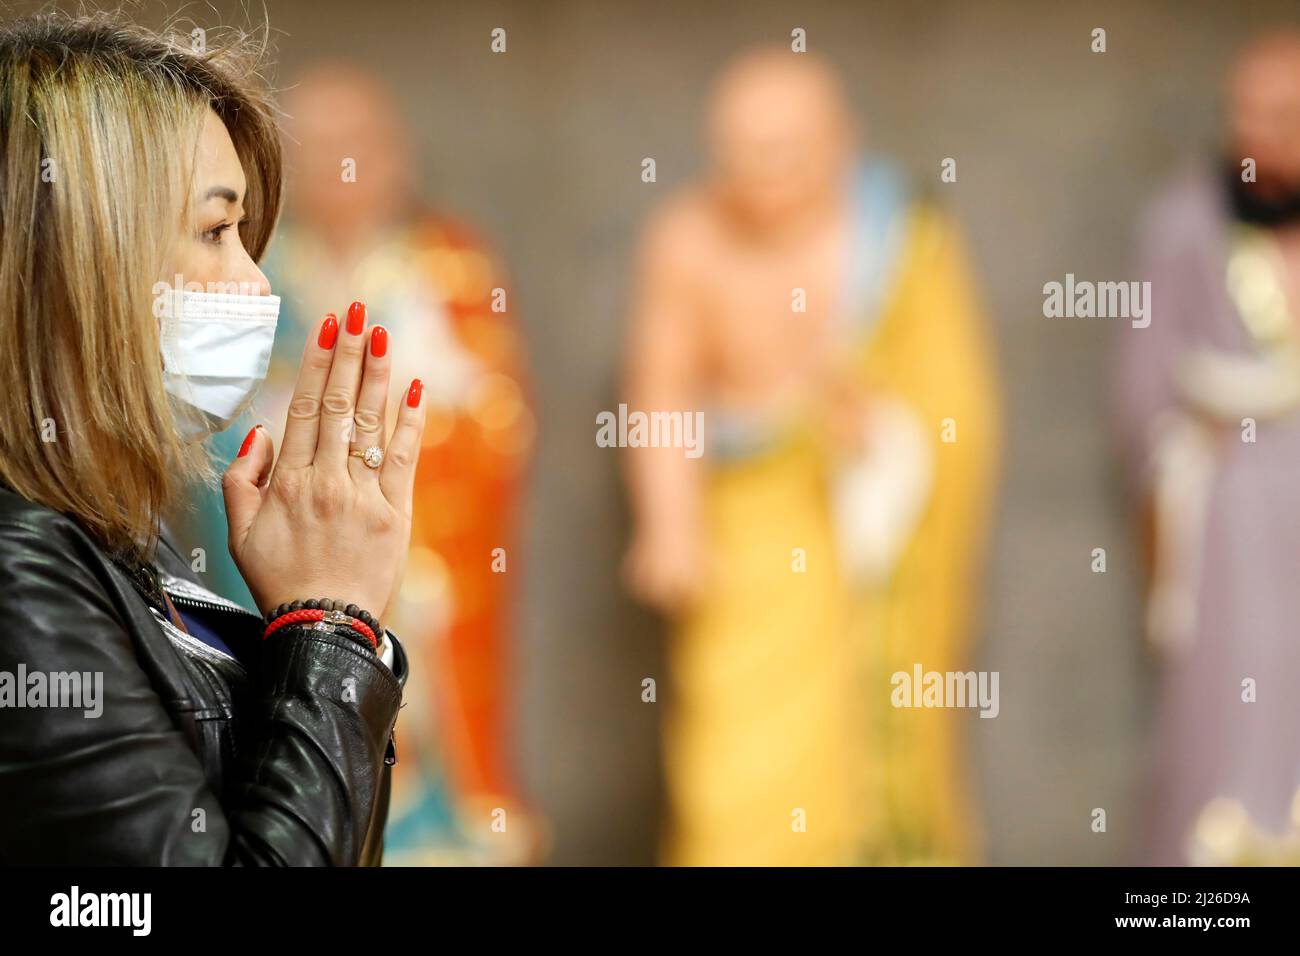 Teochew chinesischer taoist-Tempel. Asiatische Frau, die betet. Stockfoto